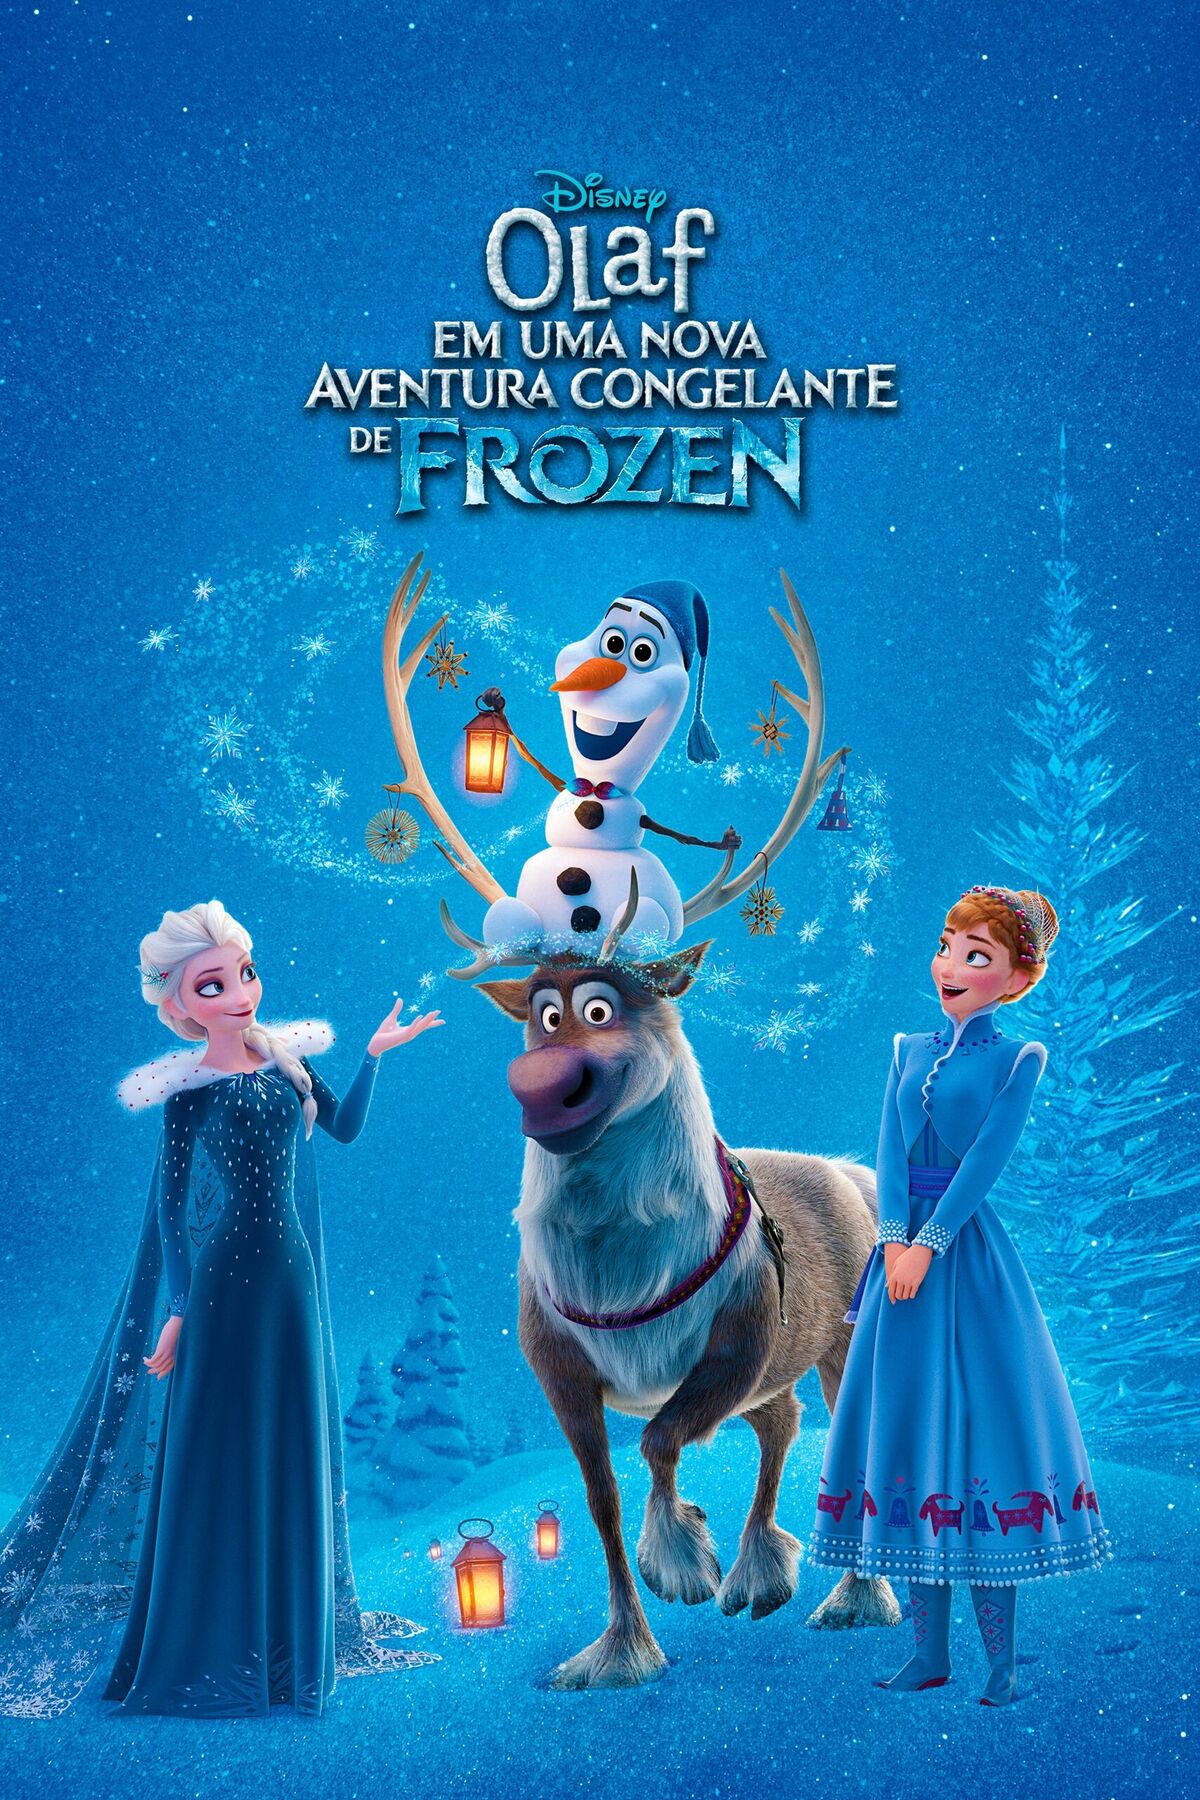 Frozen: Olaf surge em aventuras em trailer de curta-metragem do personagem  - Notícias de cinema - AdoroCinema